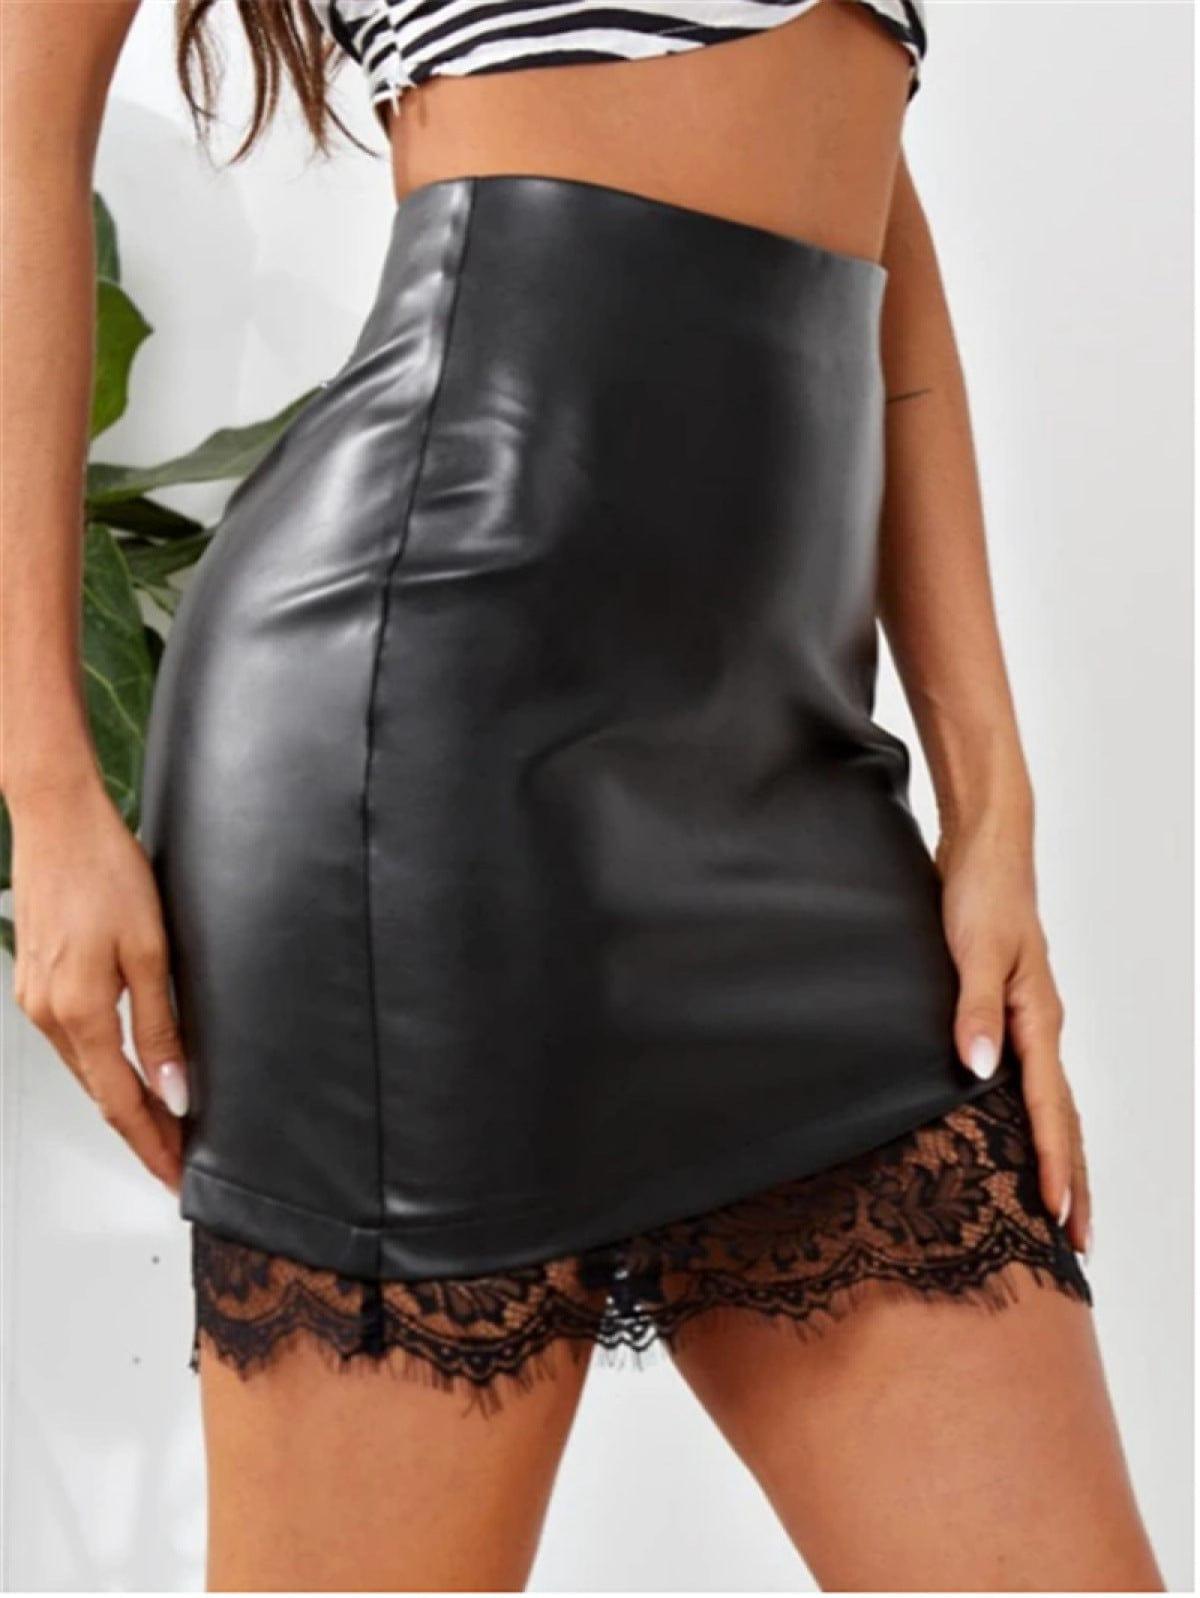 Black Lace High Waist Sexy Skirt With Zipper